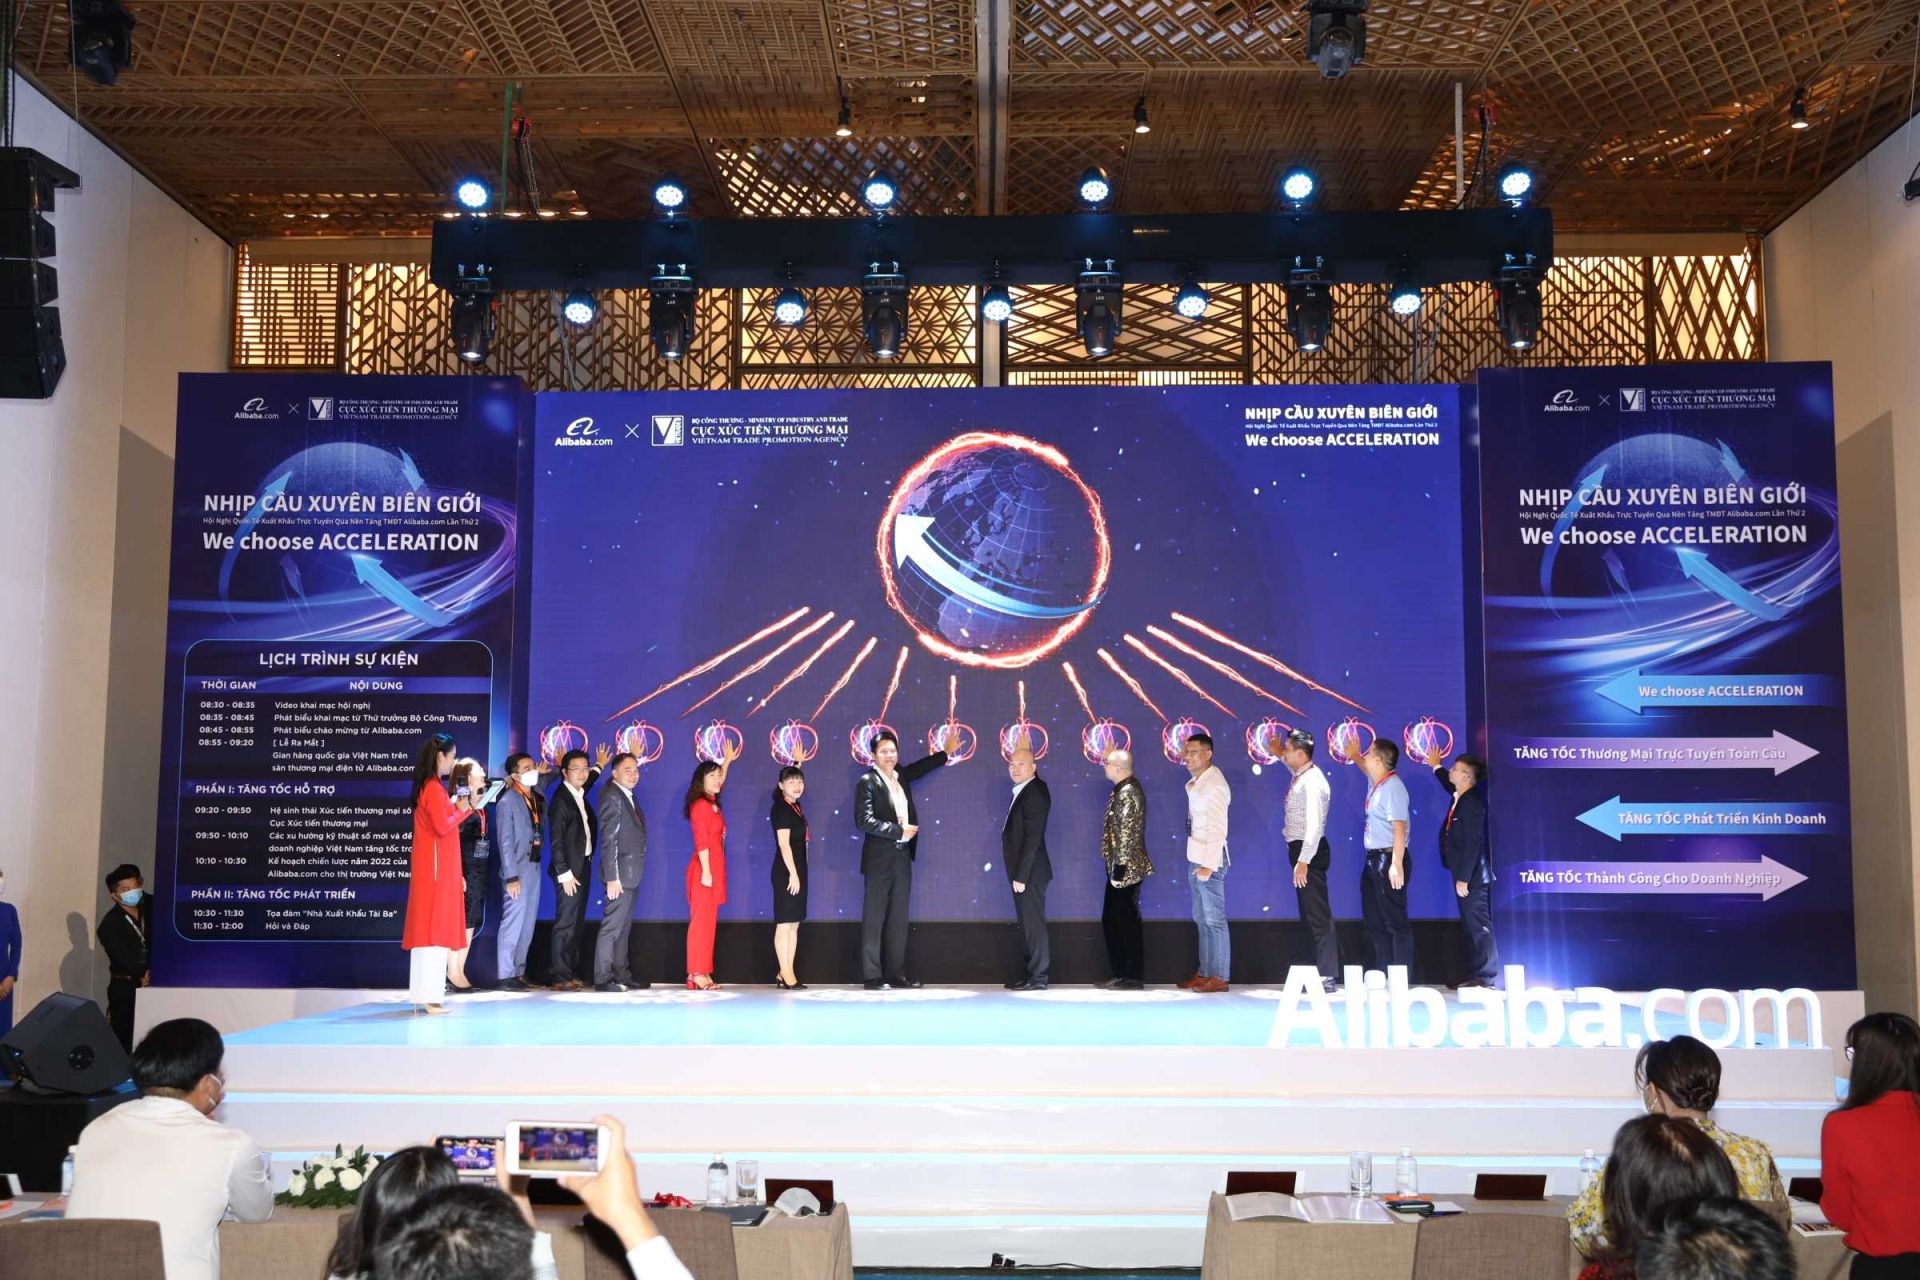 Hội nghị Quốc tế xuất khẩu trực tuyến qua nền tảng thương mại điện tử Alibaba.com “We choose ACCELERATION” lần thứ hai do Cục Xúc tiến thương mại - Bộ Công Thương và Alibaba.com tổ chức ngày 18/3/2022